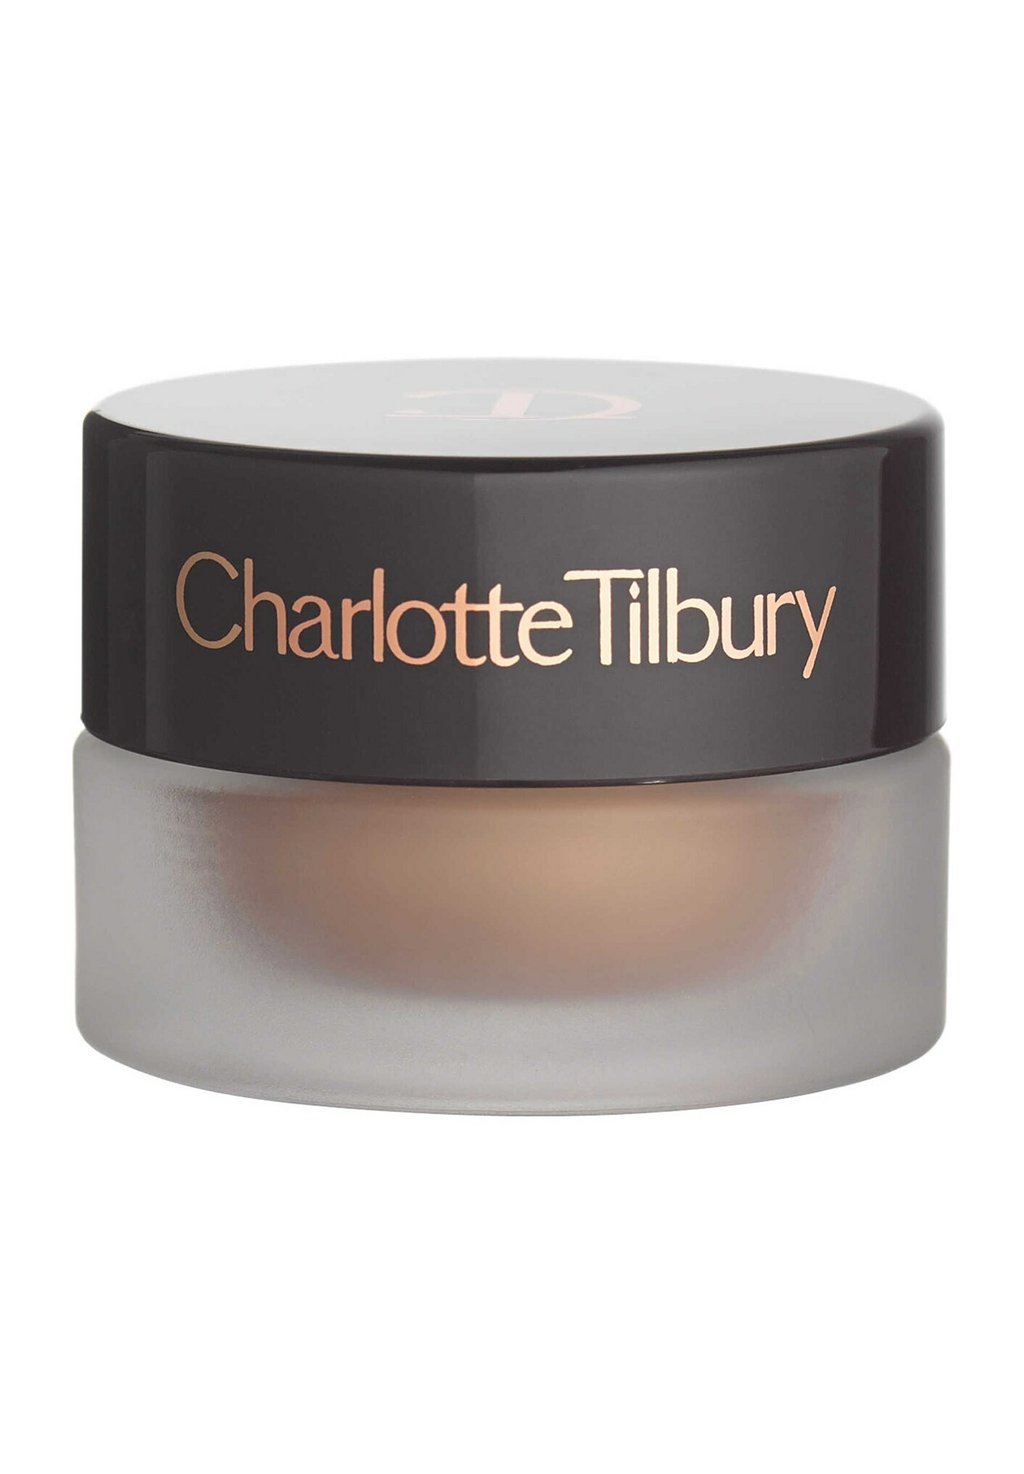 Тени для век EYES TO MESMERISE Charlotte Tilbury, цвет champagne